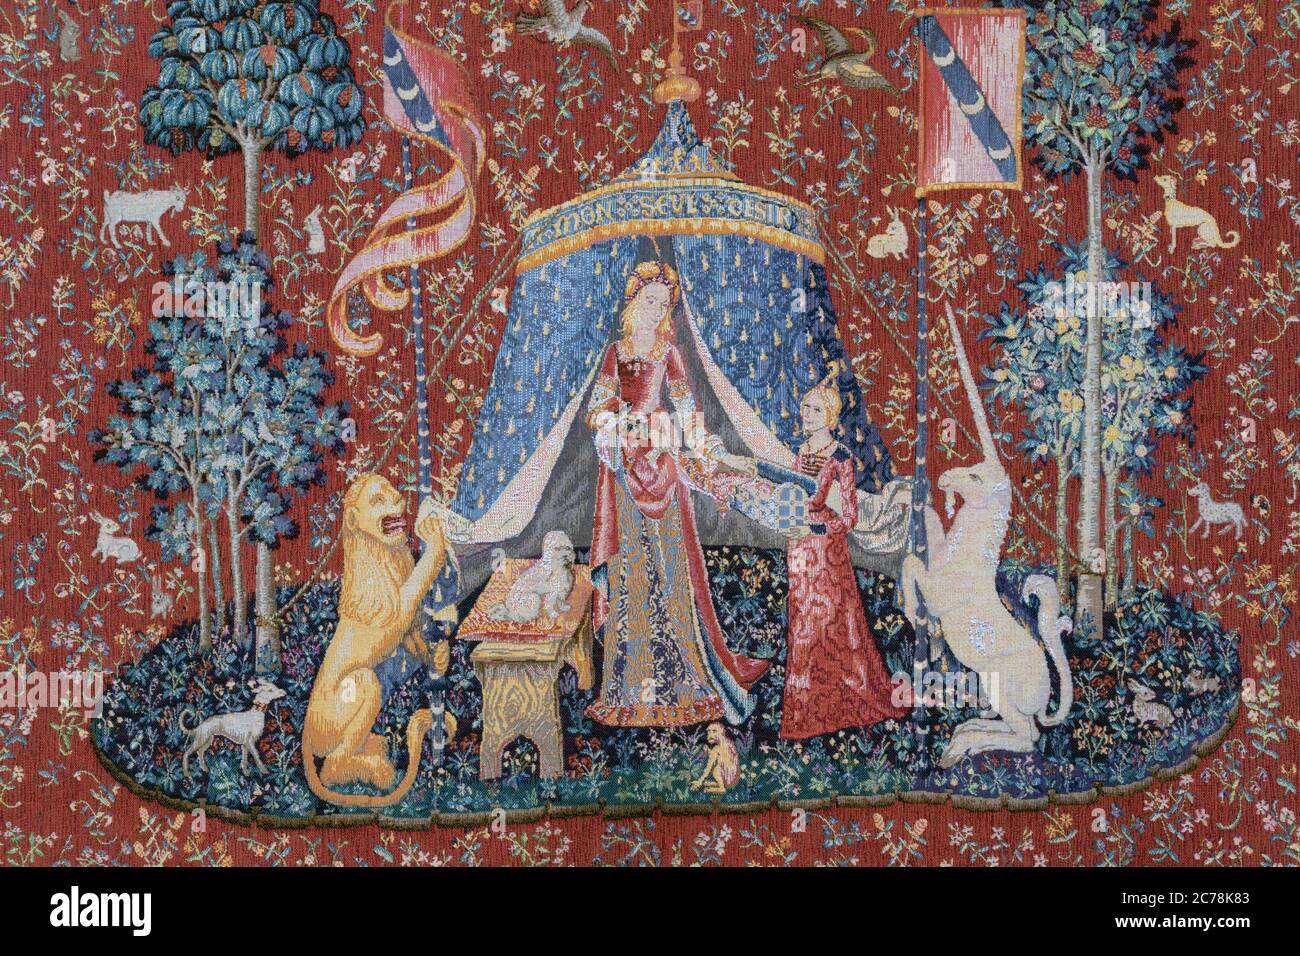 Détail de La tapisserie De Mon seul désir, la sixième de la Dame à la licorne, ou de la série de tapisseries de la Dame et de l'Unicorn. Banque D'Images